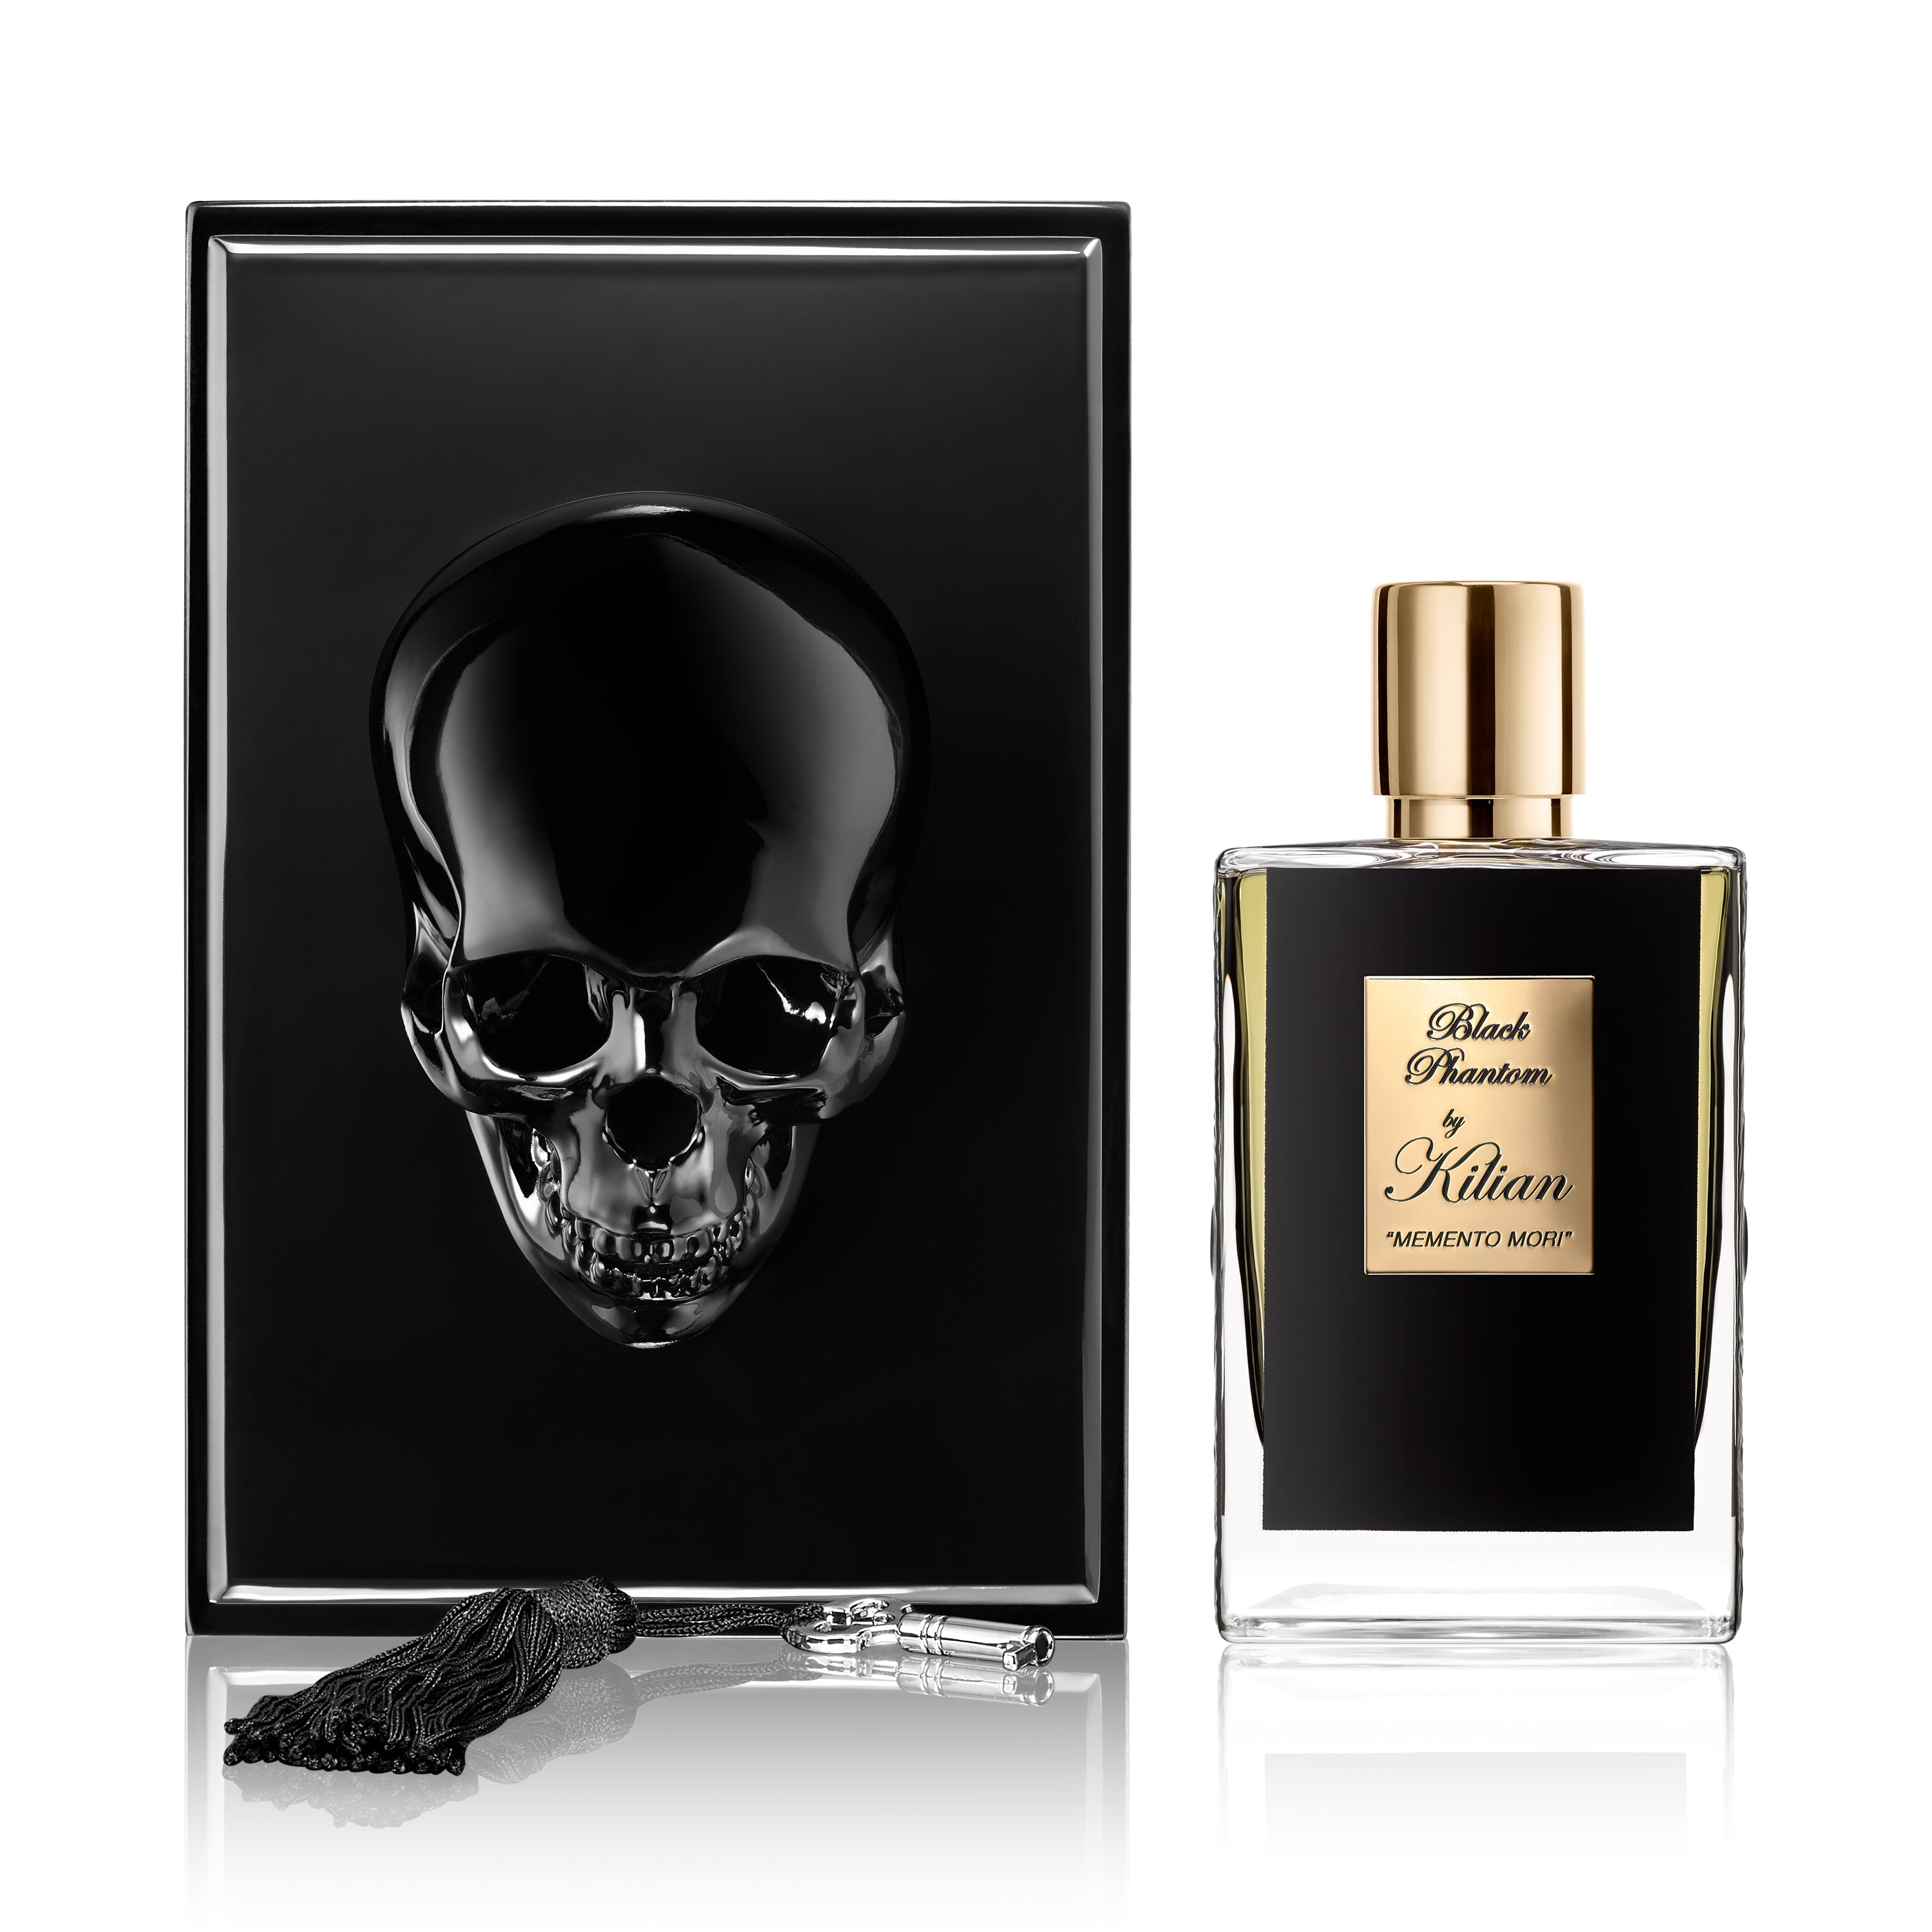 Kilian Black Phantom memento Mori Eau de Parfum